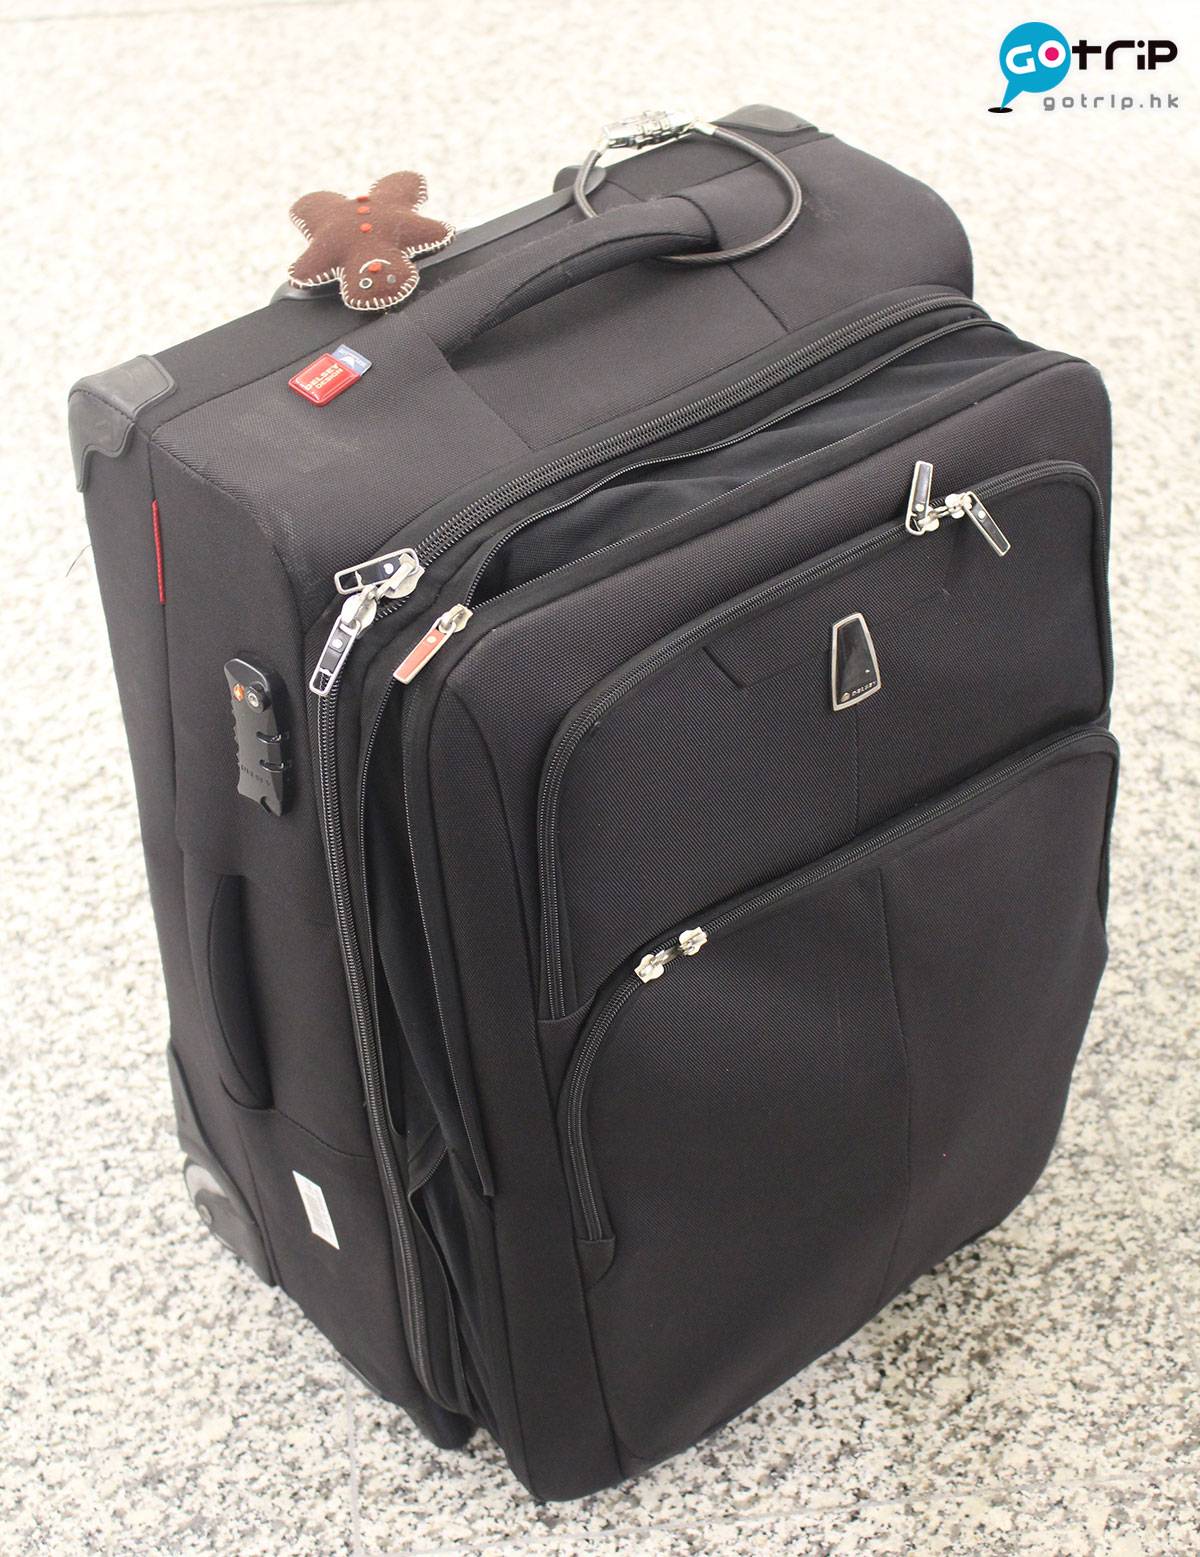 空姐 行李 免稅品 長途機 比利時 國泰和港龍空姐都規定使用的Delsey喼款。